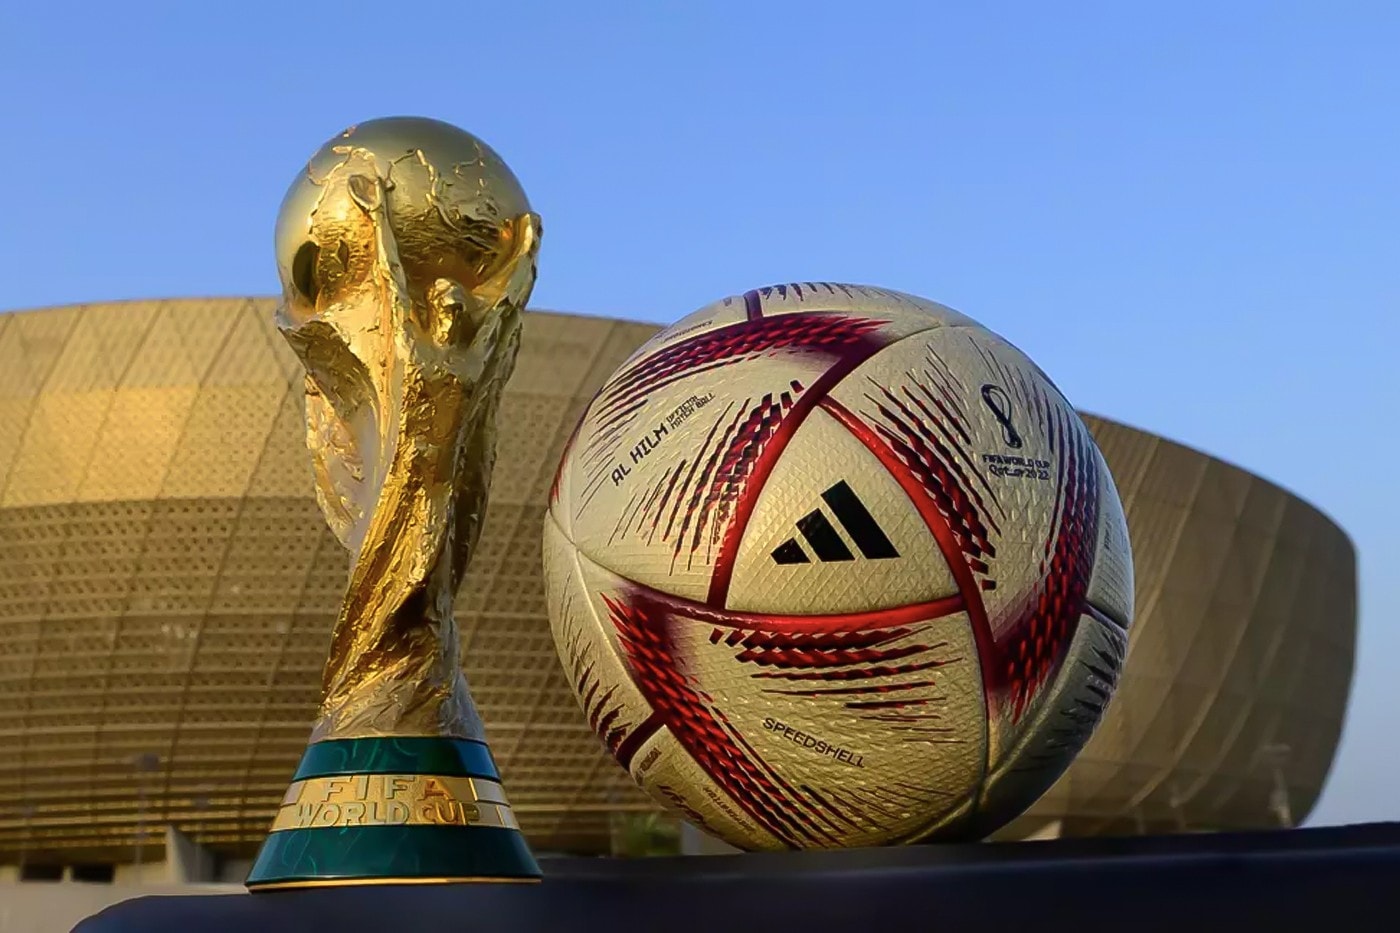 2022 世界盃 – adidas 正式公開四強賽與決賽官方比賽用球「Al Hilm」